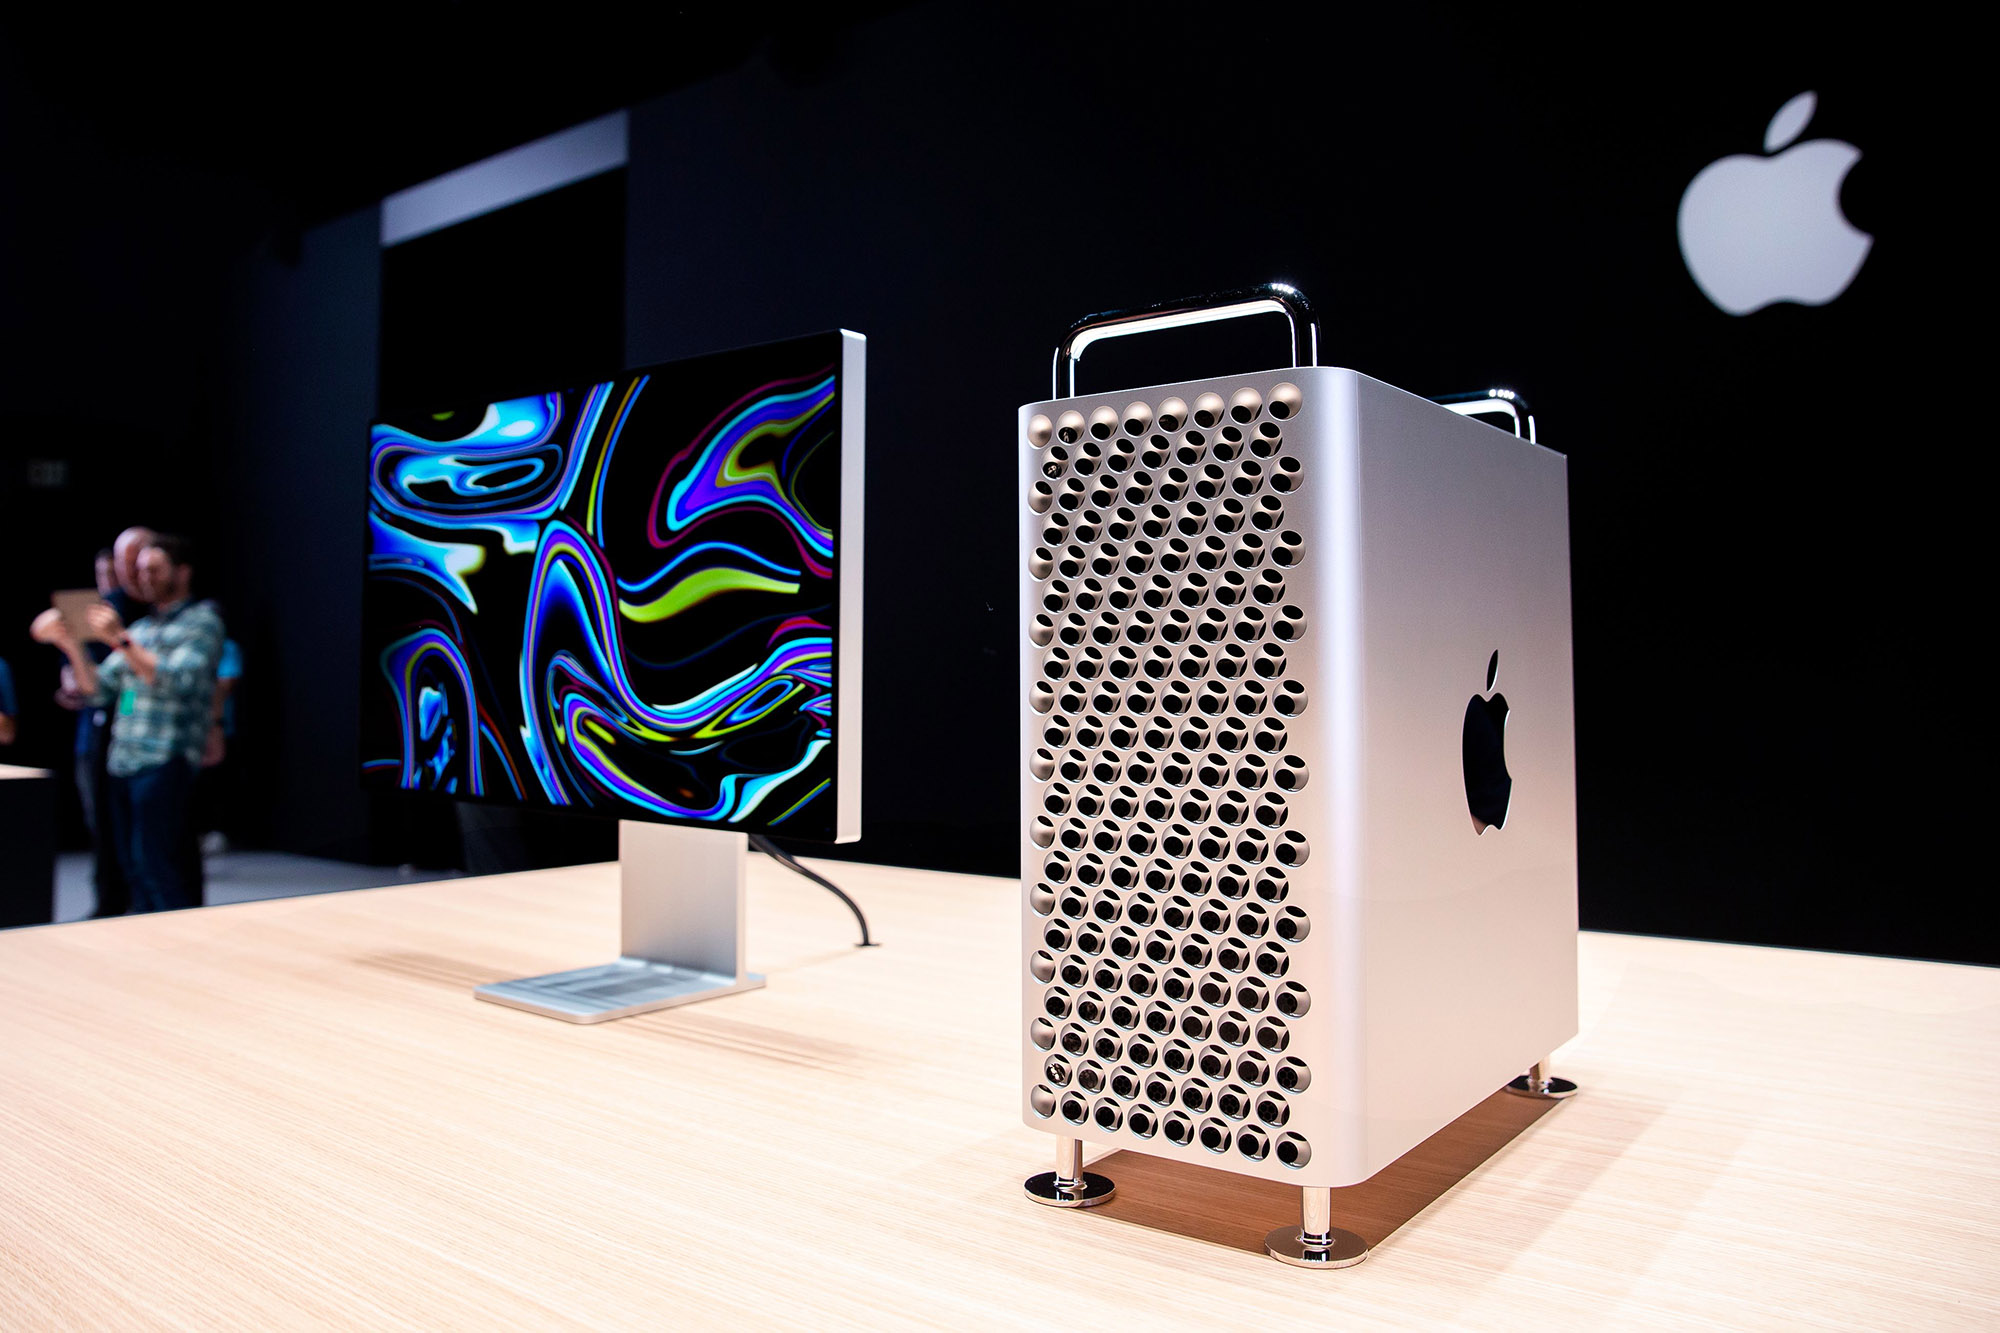 El nuevo Mac Pro de Apple se exhibe en la sala de exposición durante la Conferencia Mundial de Desarrolladores de Apple (WWDC).